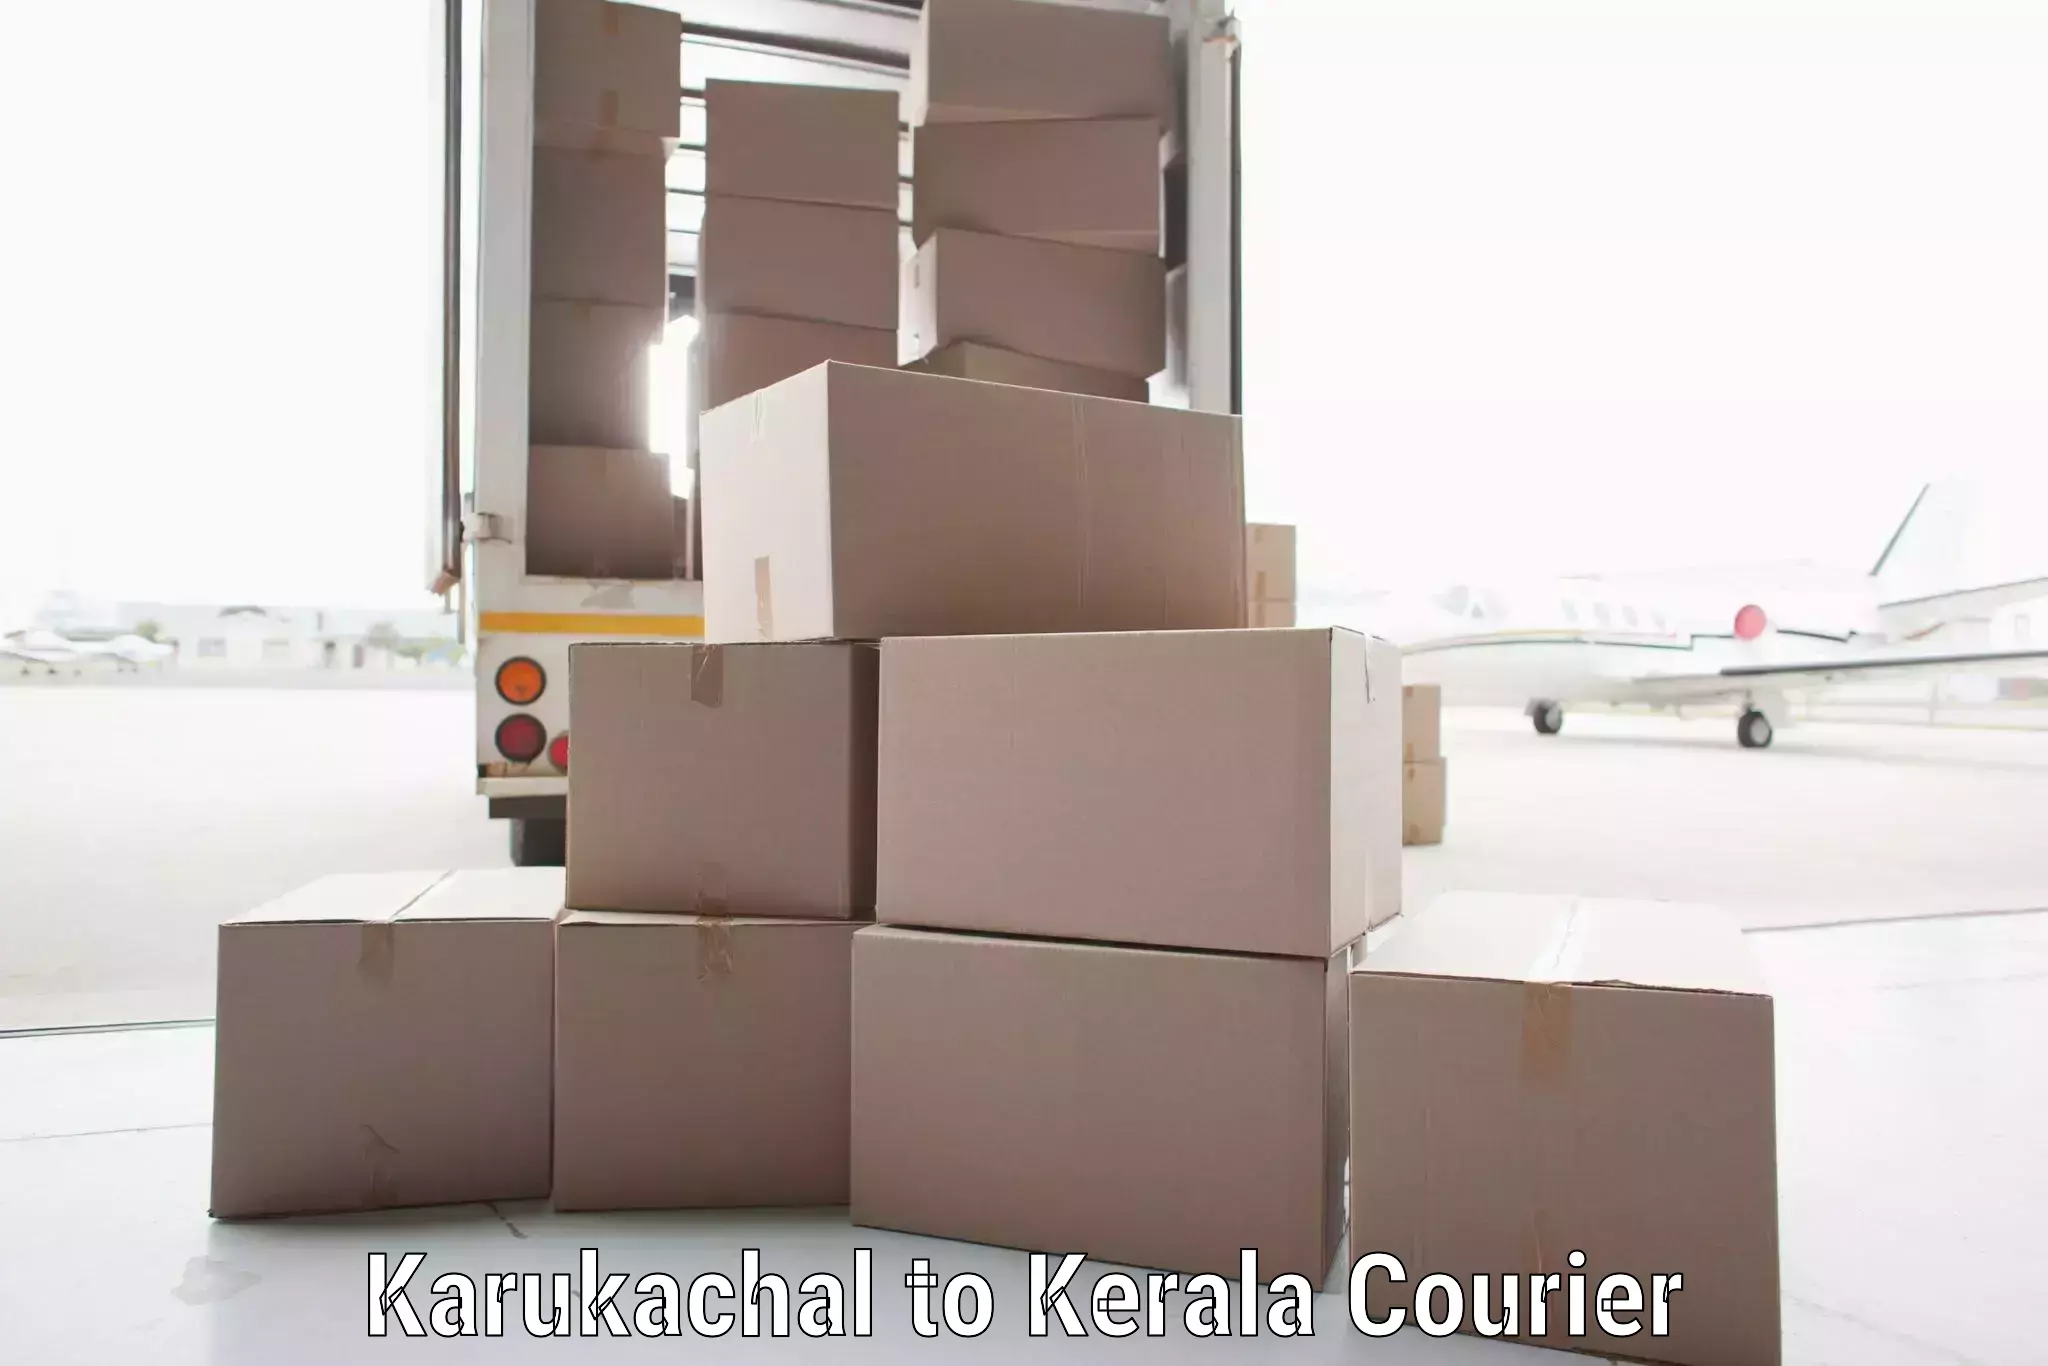 Expedited shipping methods Karukachal to Kerala